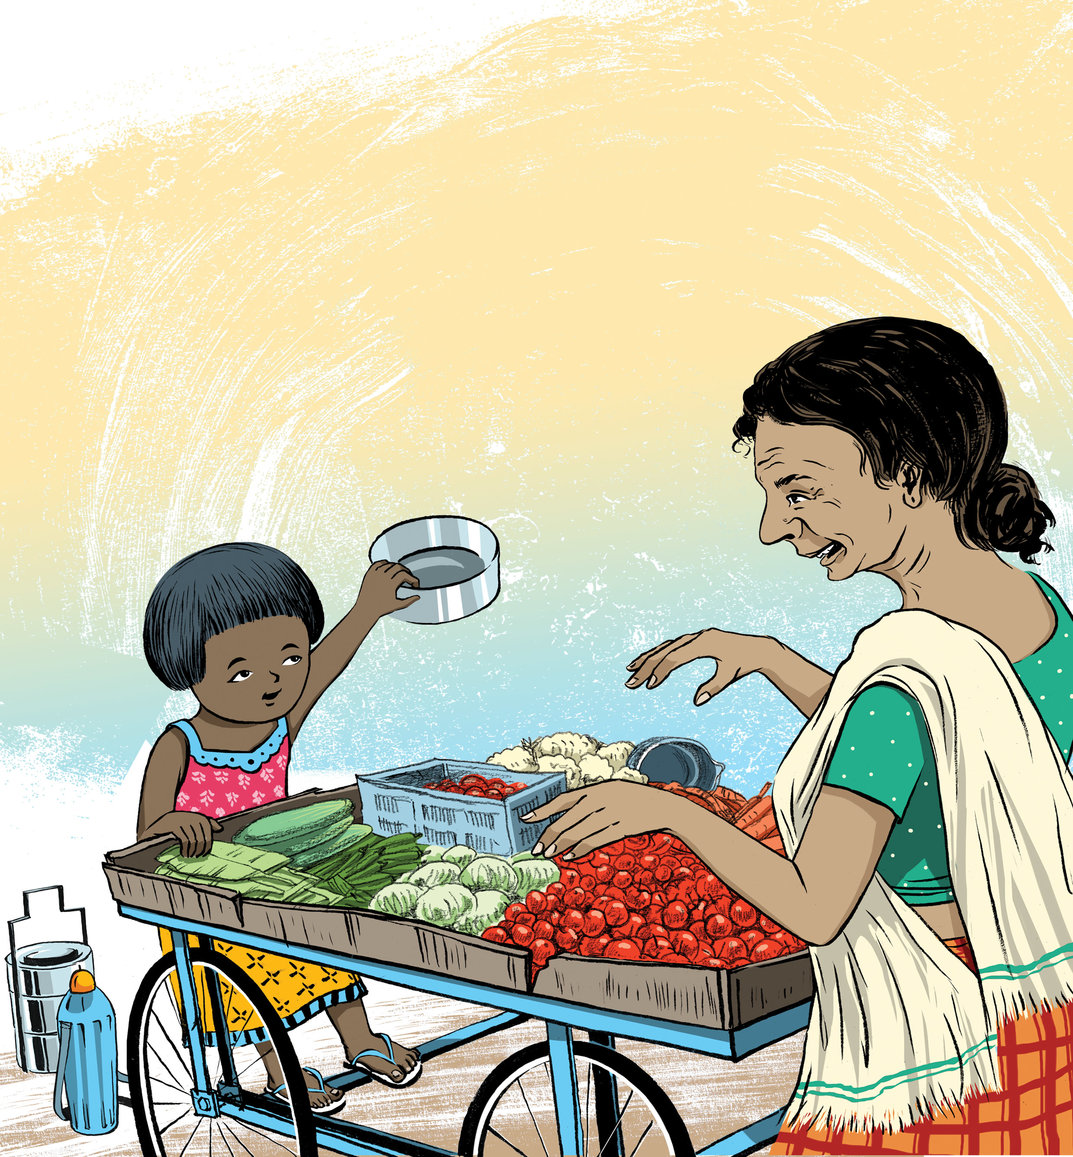 A little girl asking vegetable vendor for vegetables - StoryWeaver